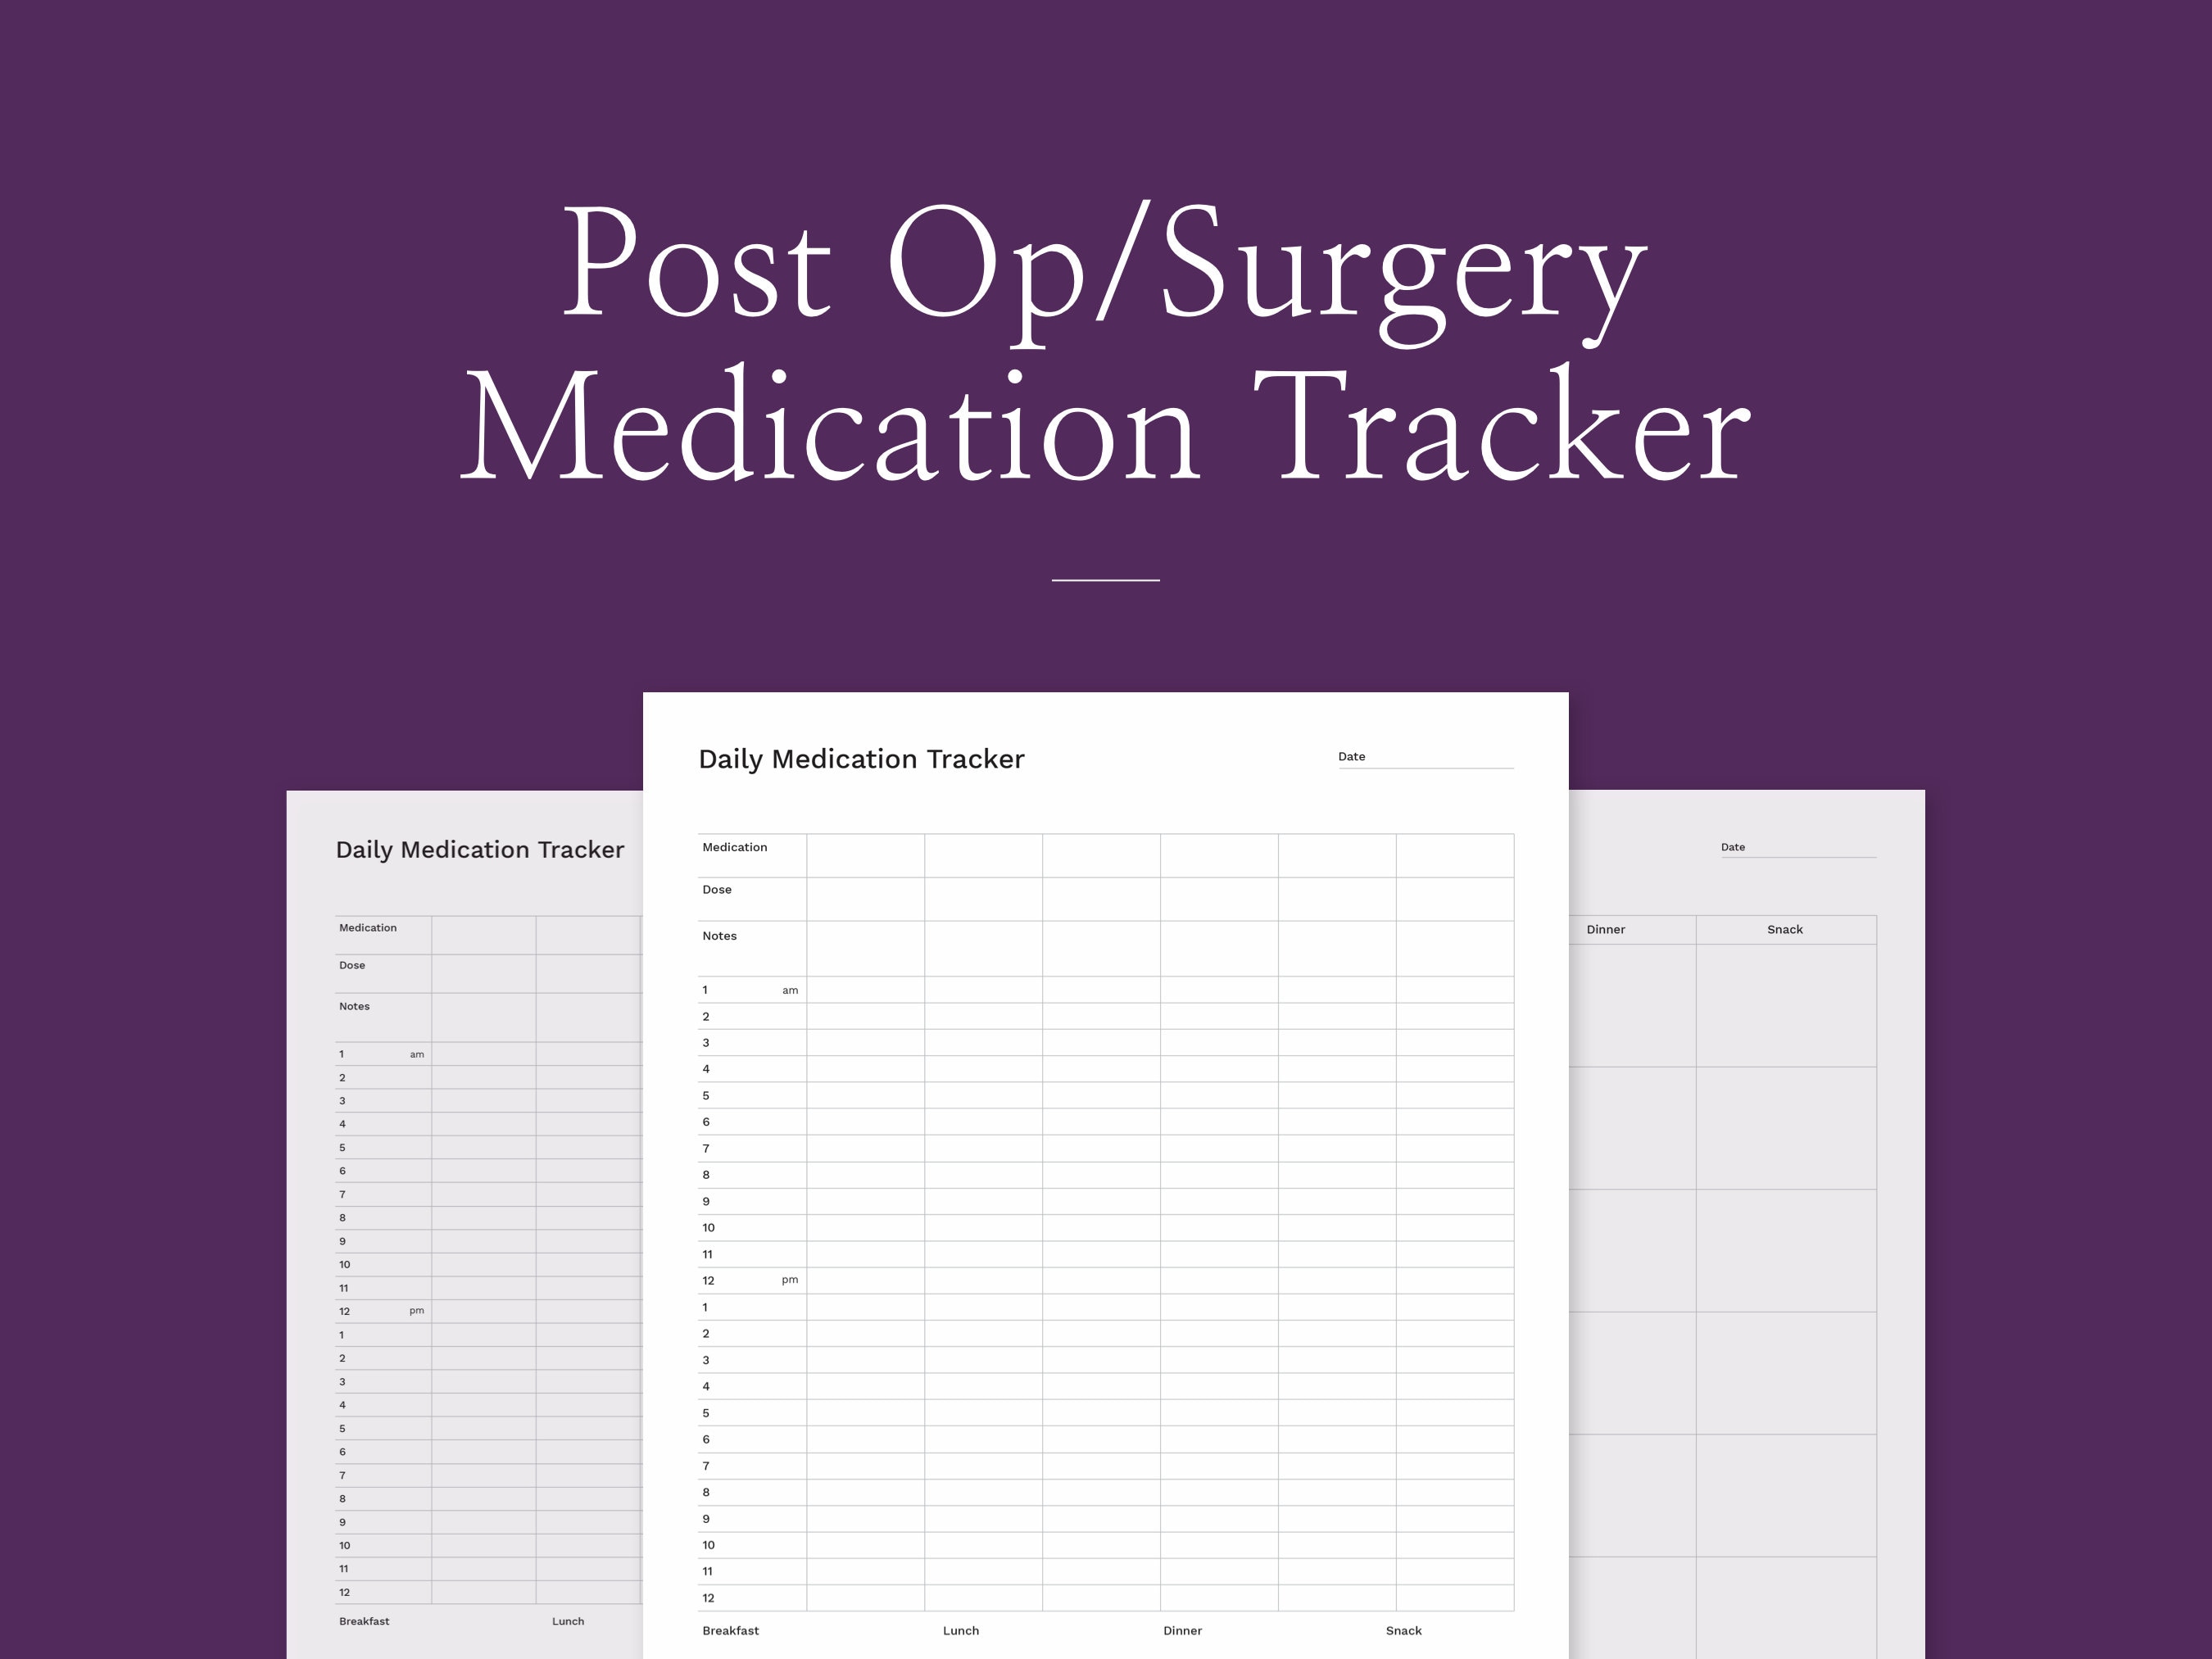 IVF Medication Tracker, Medicine Log, Vitamin Tracker, Pregnancy Kit, TTC  Journal, Medication Schedule, TTC Journal, Medication Organizer 